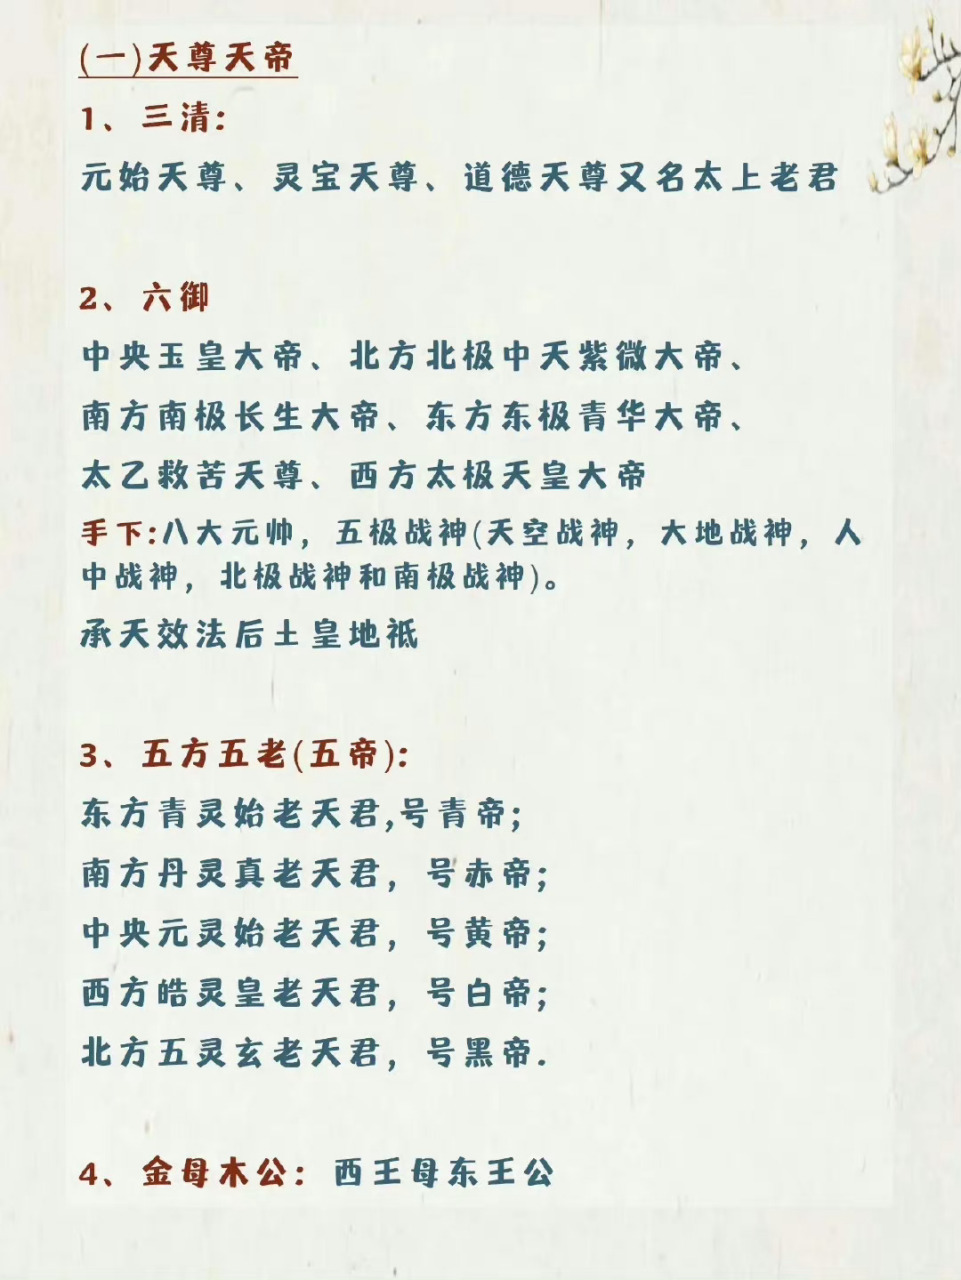 中国神仙排名谱系表图片